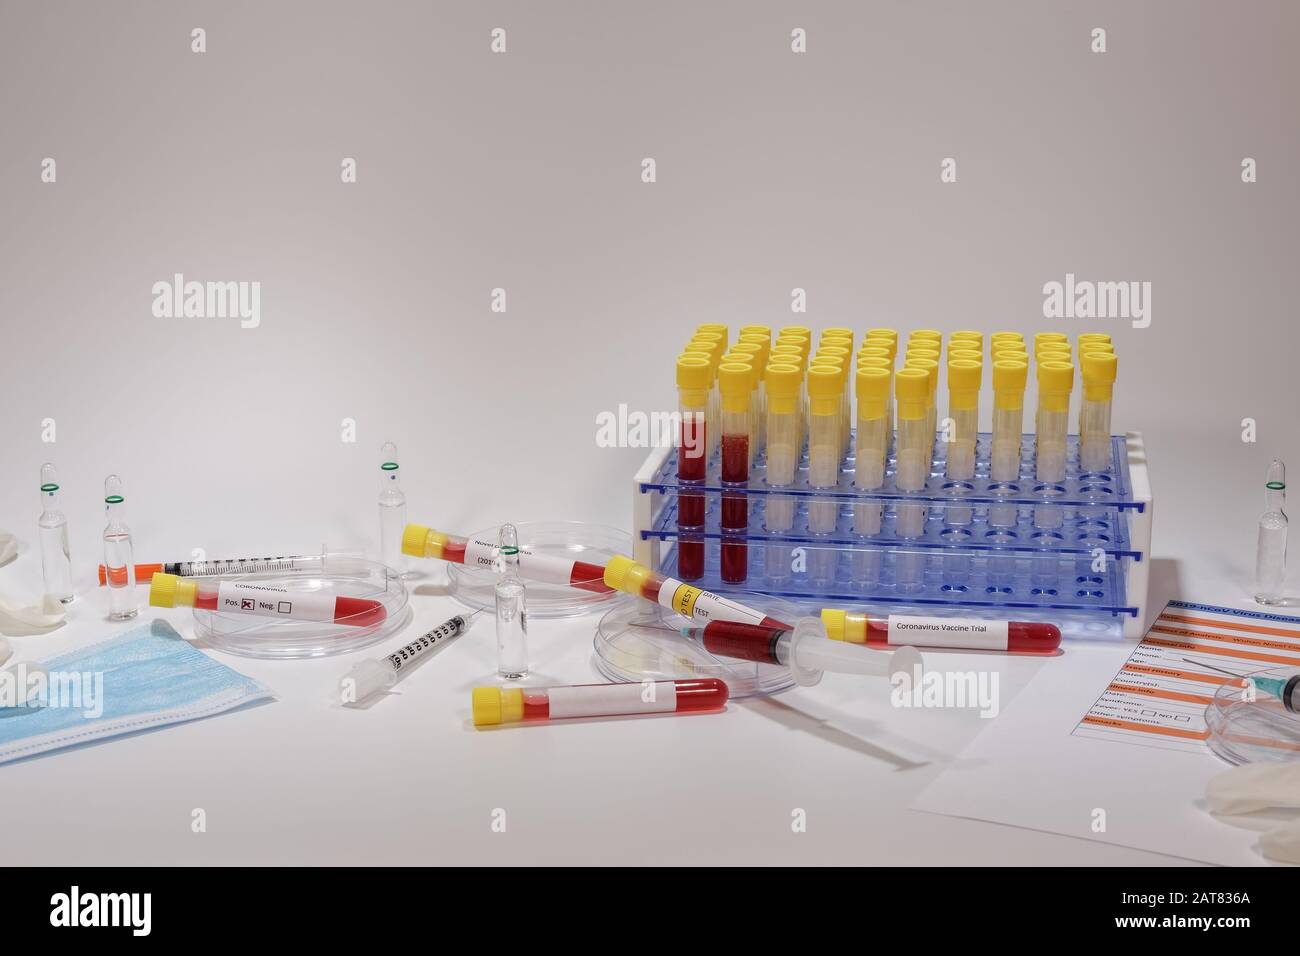 Test clinique de laboratoire de microbiologie Wuhan Coronavirus COVID-19 2019-nCoV. Équipements médicaux de laboratoire, y compris tubes de sang vacutainer sur portoir et seringues Banque D'Images